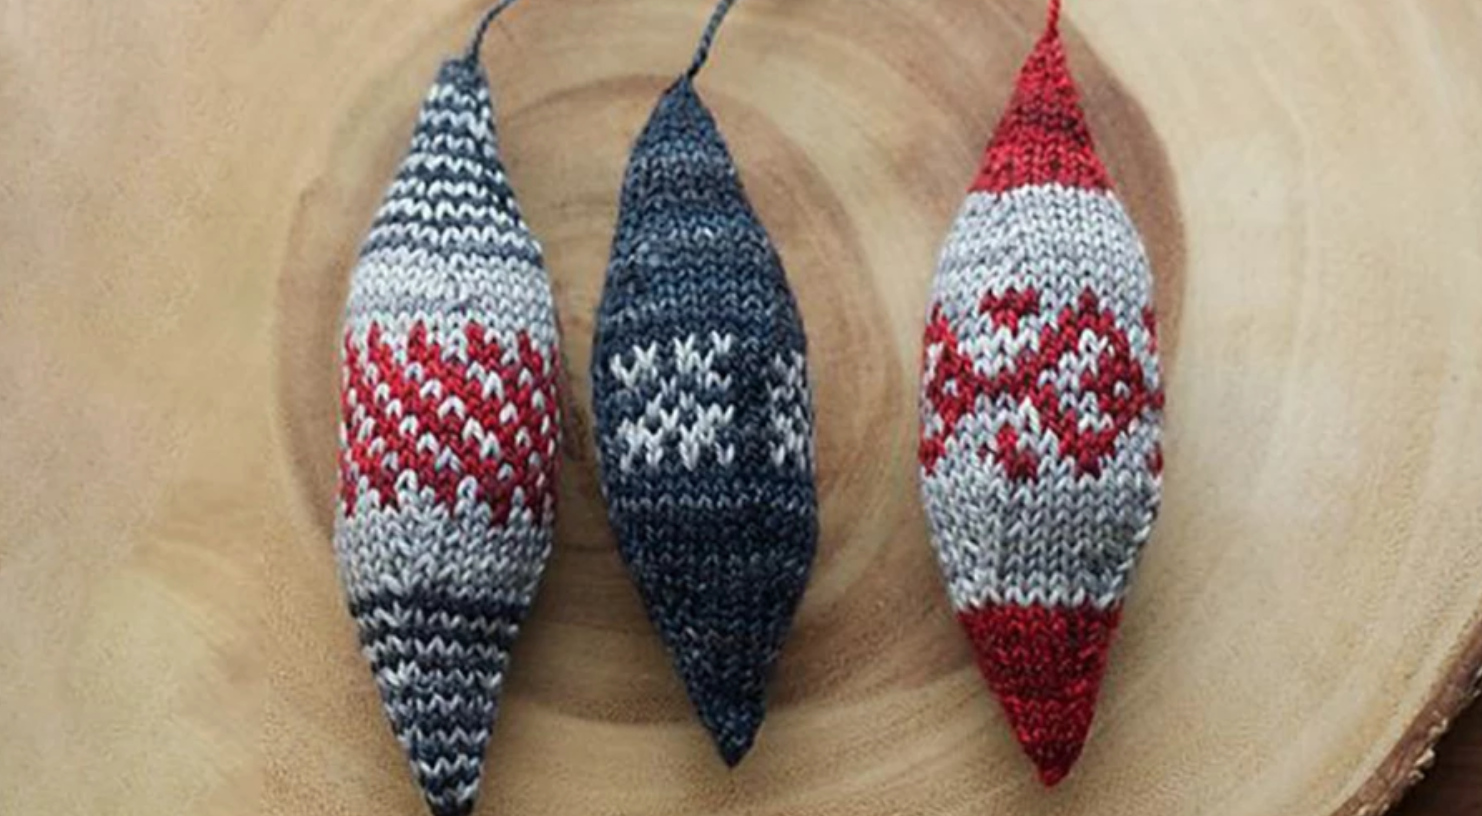 three knit fair isle ornaments